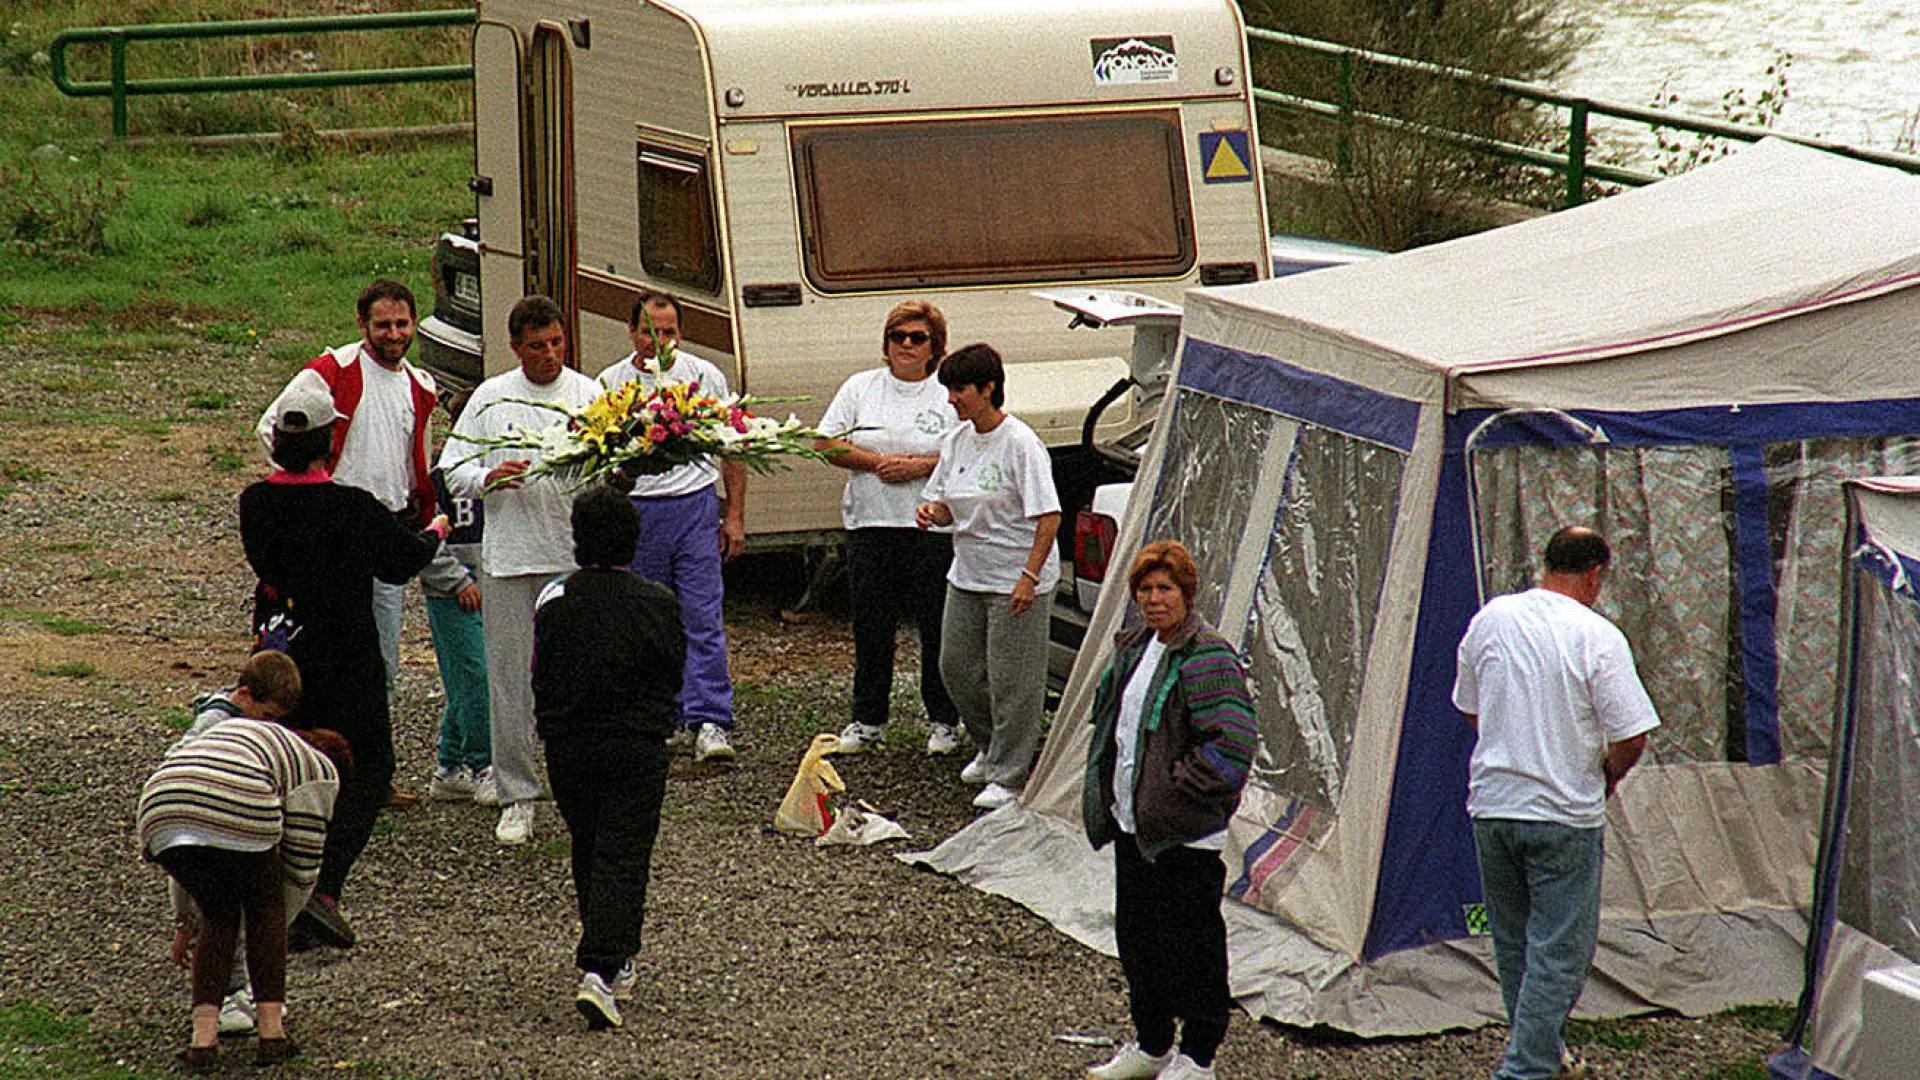 Los campistas se reúnen en Biescas como homenaje al pueblo por su gran comportamiento durante la riada